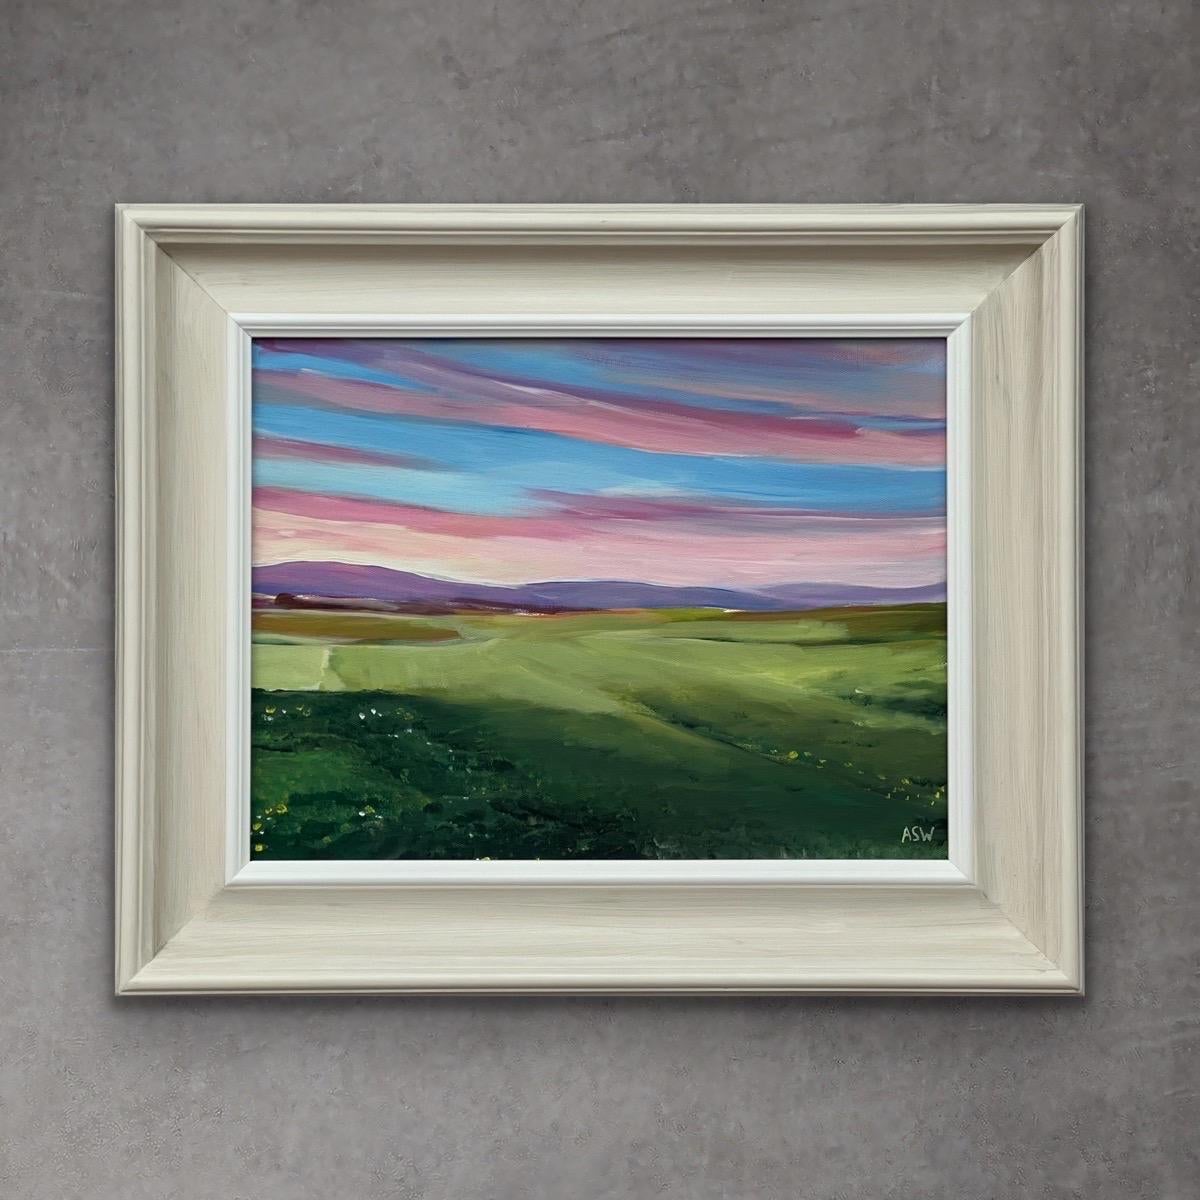 Sonnenuntergang auf dem Golfplatz von Brora in den schottischen Highlands von der zeitgenössischen britischen Künstlerin Angela Wakefield. Dieses einzigartige Original zeigt einen rosa-blauen Himmel mit violetten Hügeln bei Sonnenuntergang an der